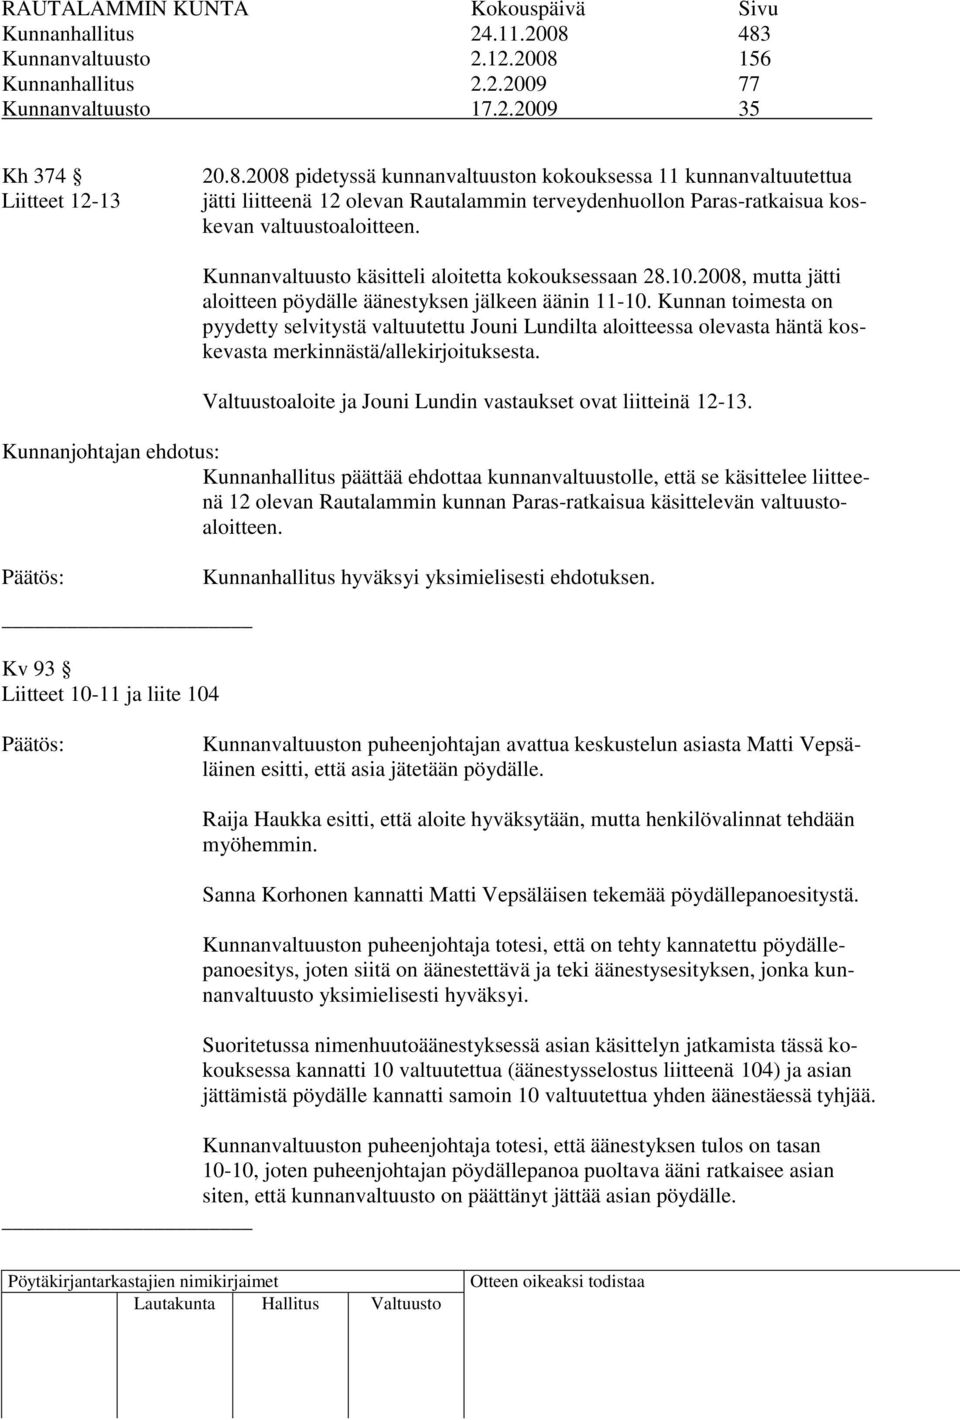 Kunnan toimesta on pyydetty selvitystä valtuutettu Jouni Lundilta aloitteessa olevasta häntä koskevasta merkinnästä/allekirjoituksesta. Valtuustoaloite ja Jouni Lundin vastaukset ovat liitteinä 12-13.